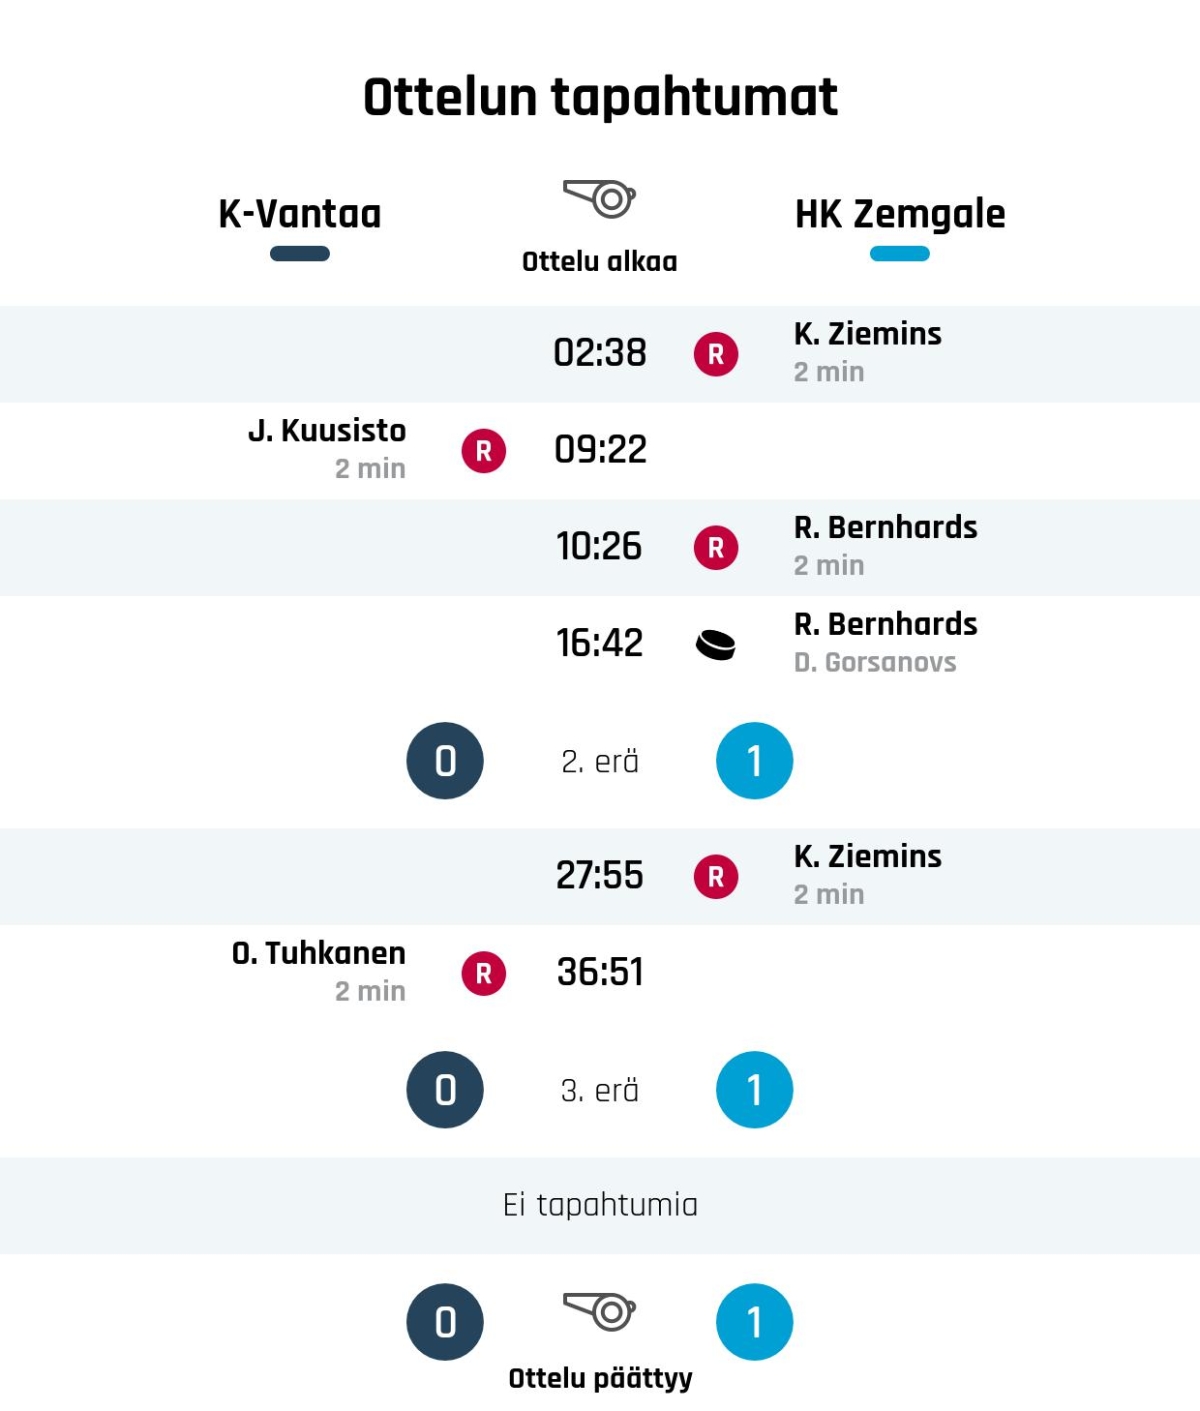 HK Zemgale kaatoi K-Vantaan yhden maalin ottelussa